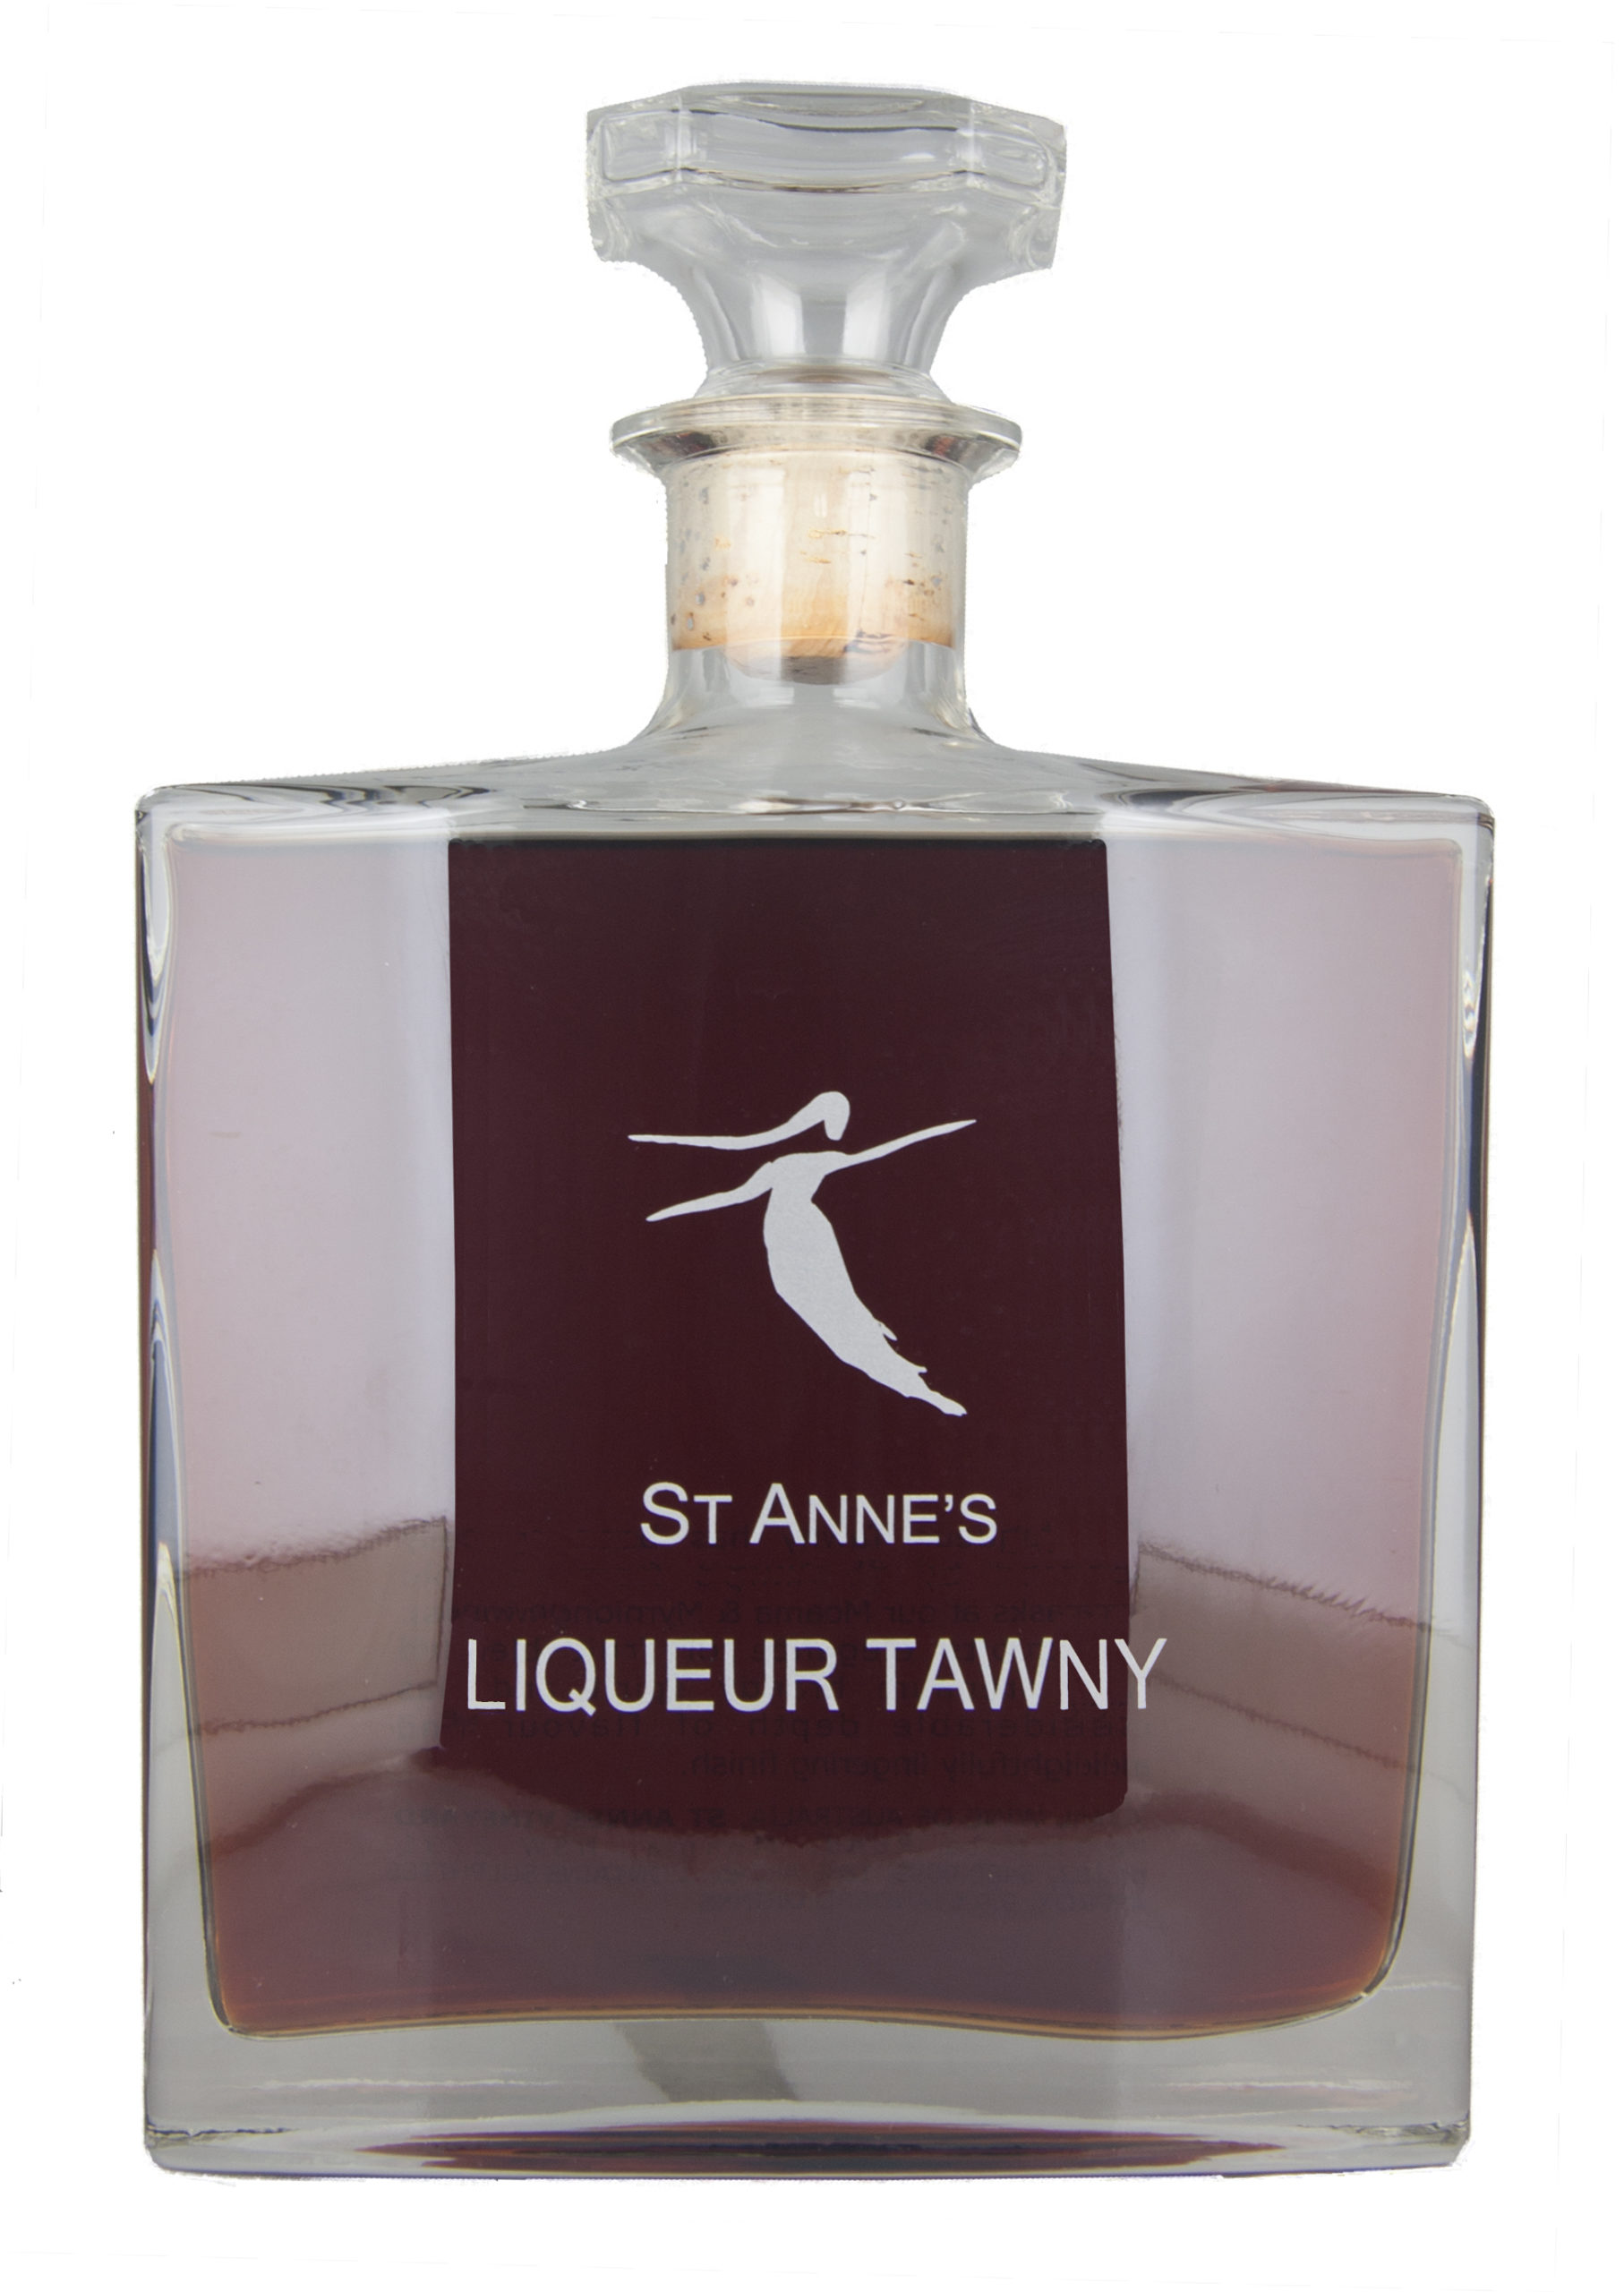 St Anne's Liqueur Tawney Decant